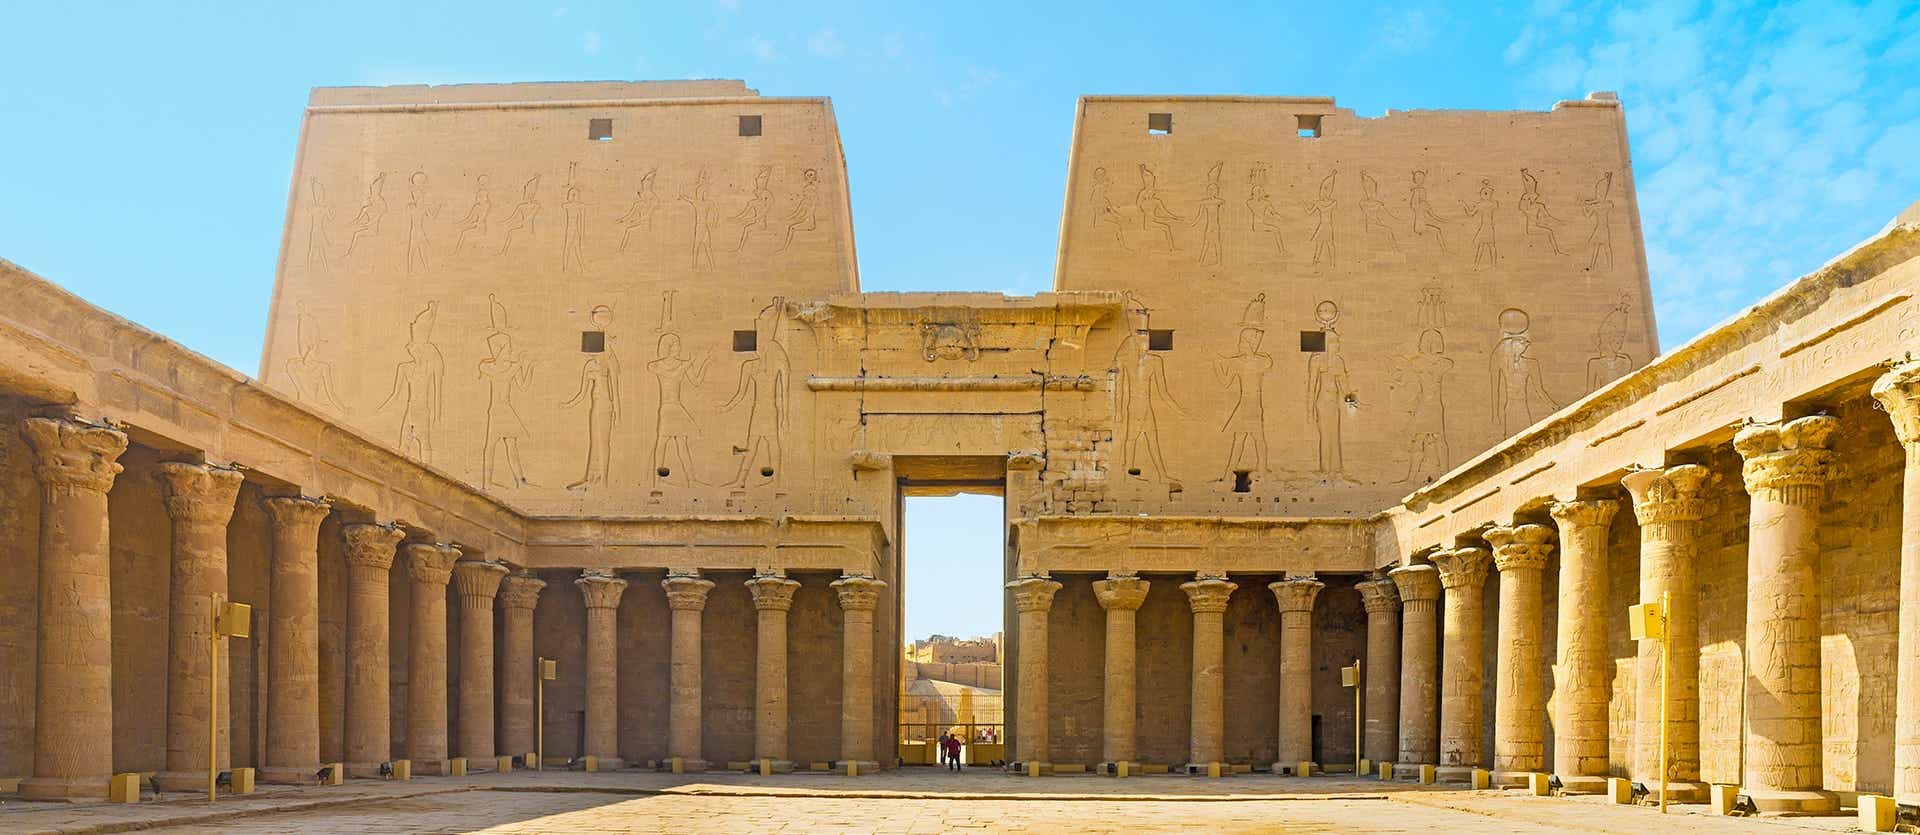 Temple of Horus <span class="iconos separador"></span> Edfu <span class="iconos separador"></span> Egypt 